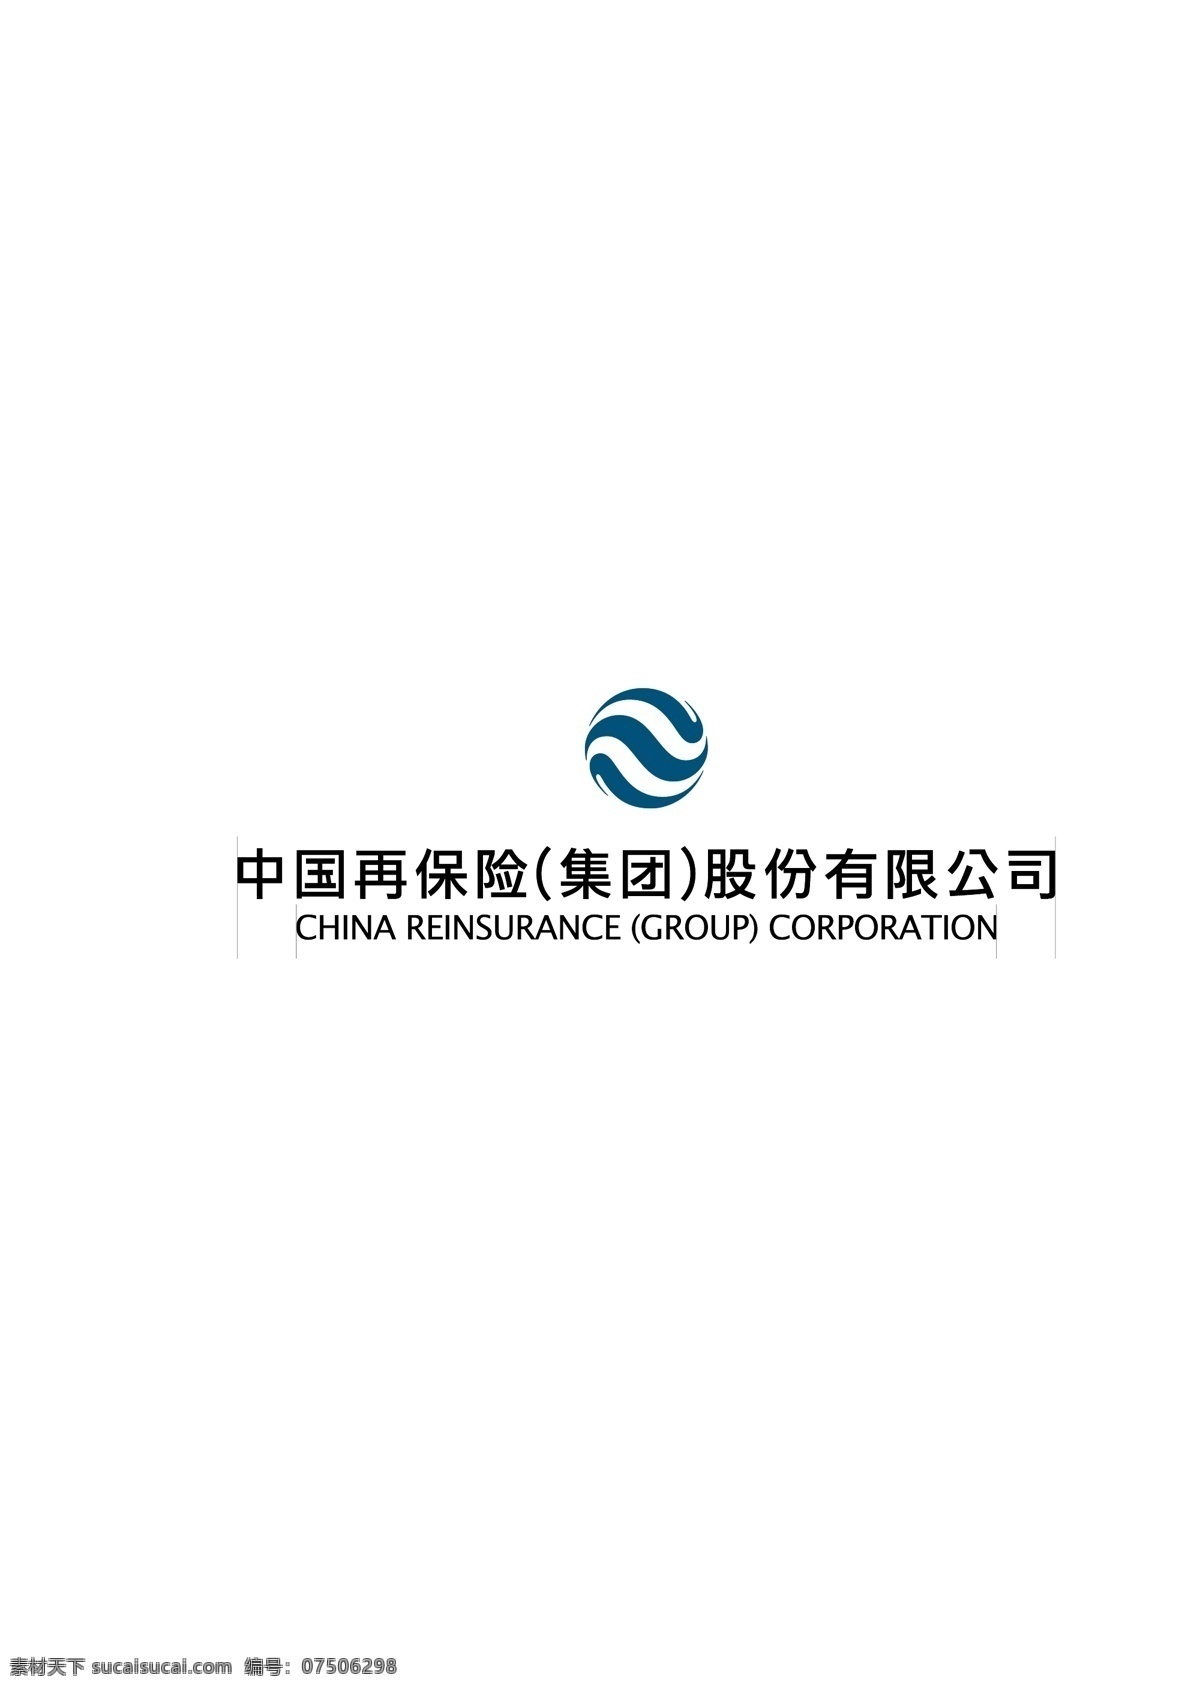 中国 再 保险 集团 logo 标识标志图标 企业 标志 中国再保险 矢量 psd源文件 logo设计